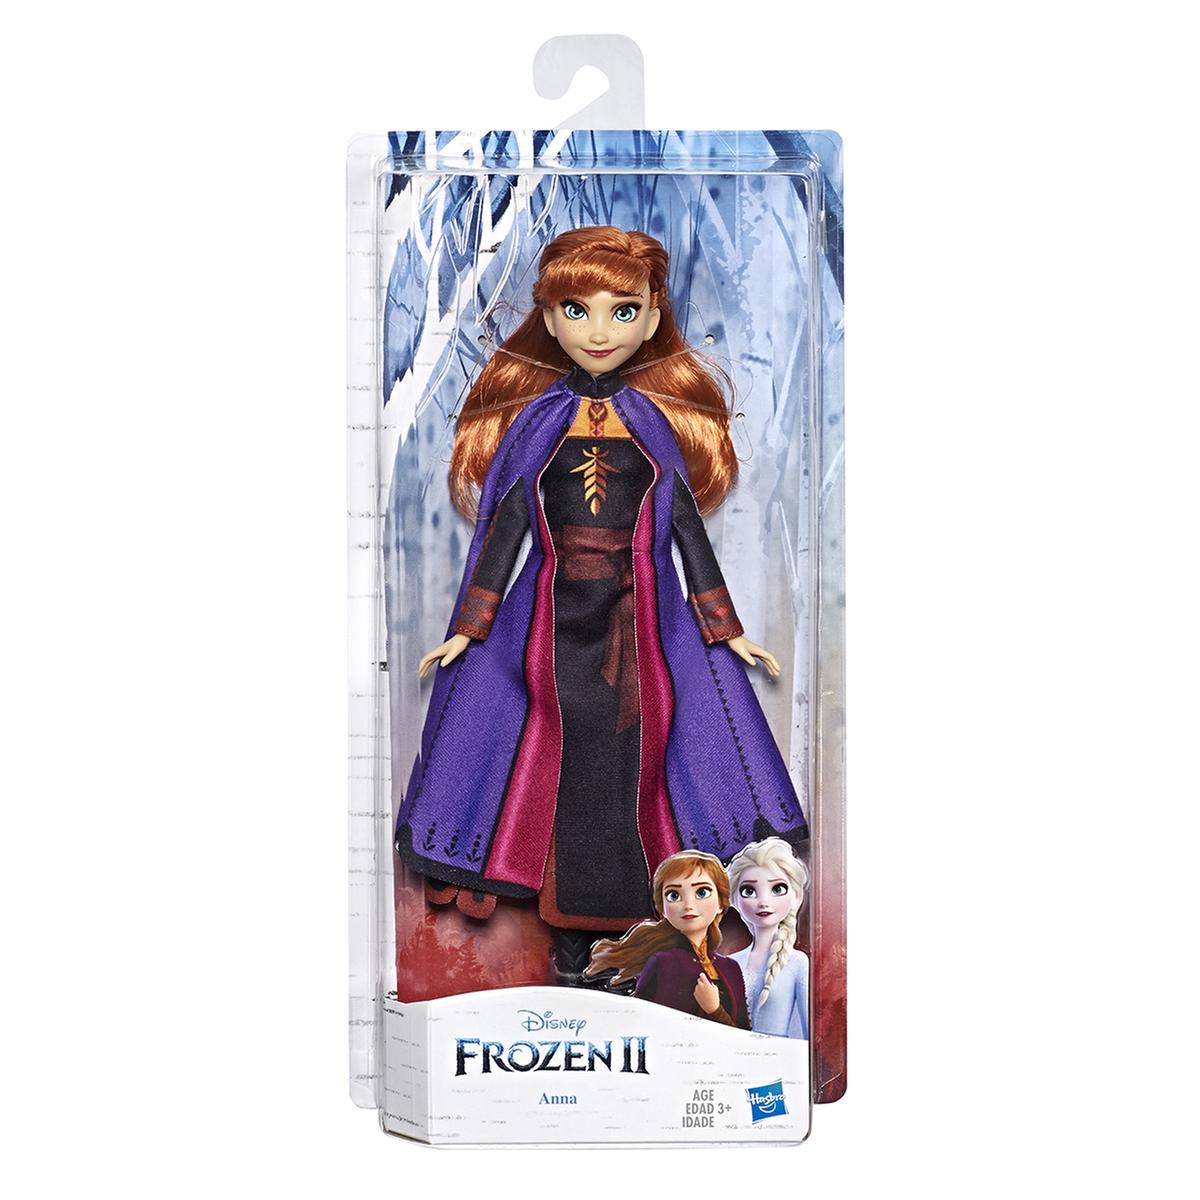 Drama Rezumar explosión Frozen - Anna - Muñeca Frozen 2 | Frozen | Toys"R"Us España